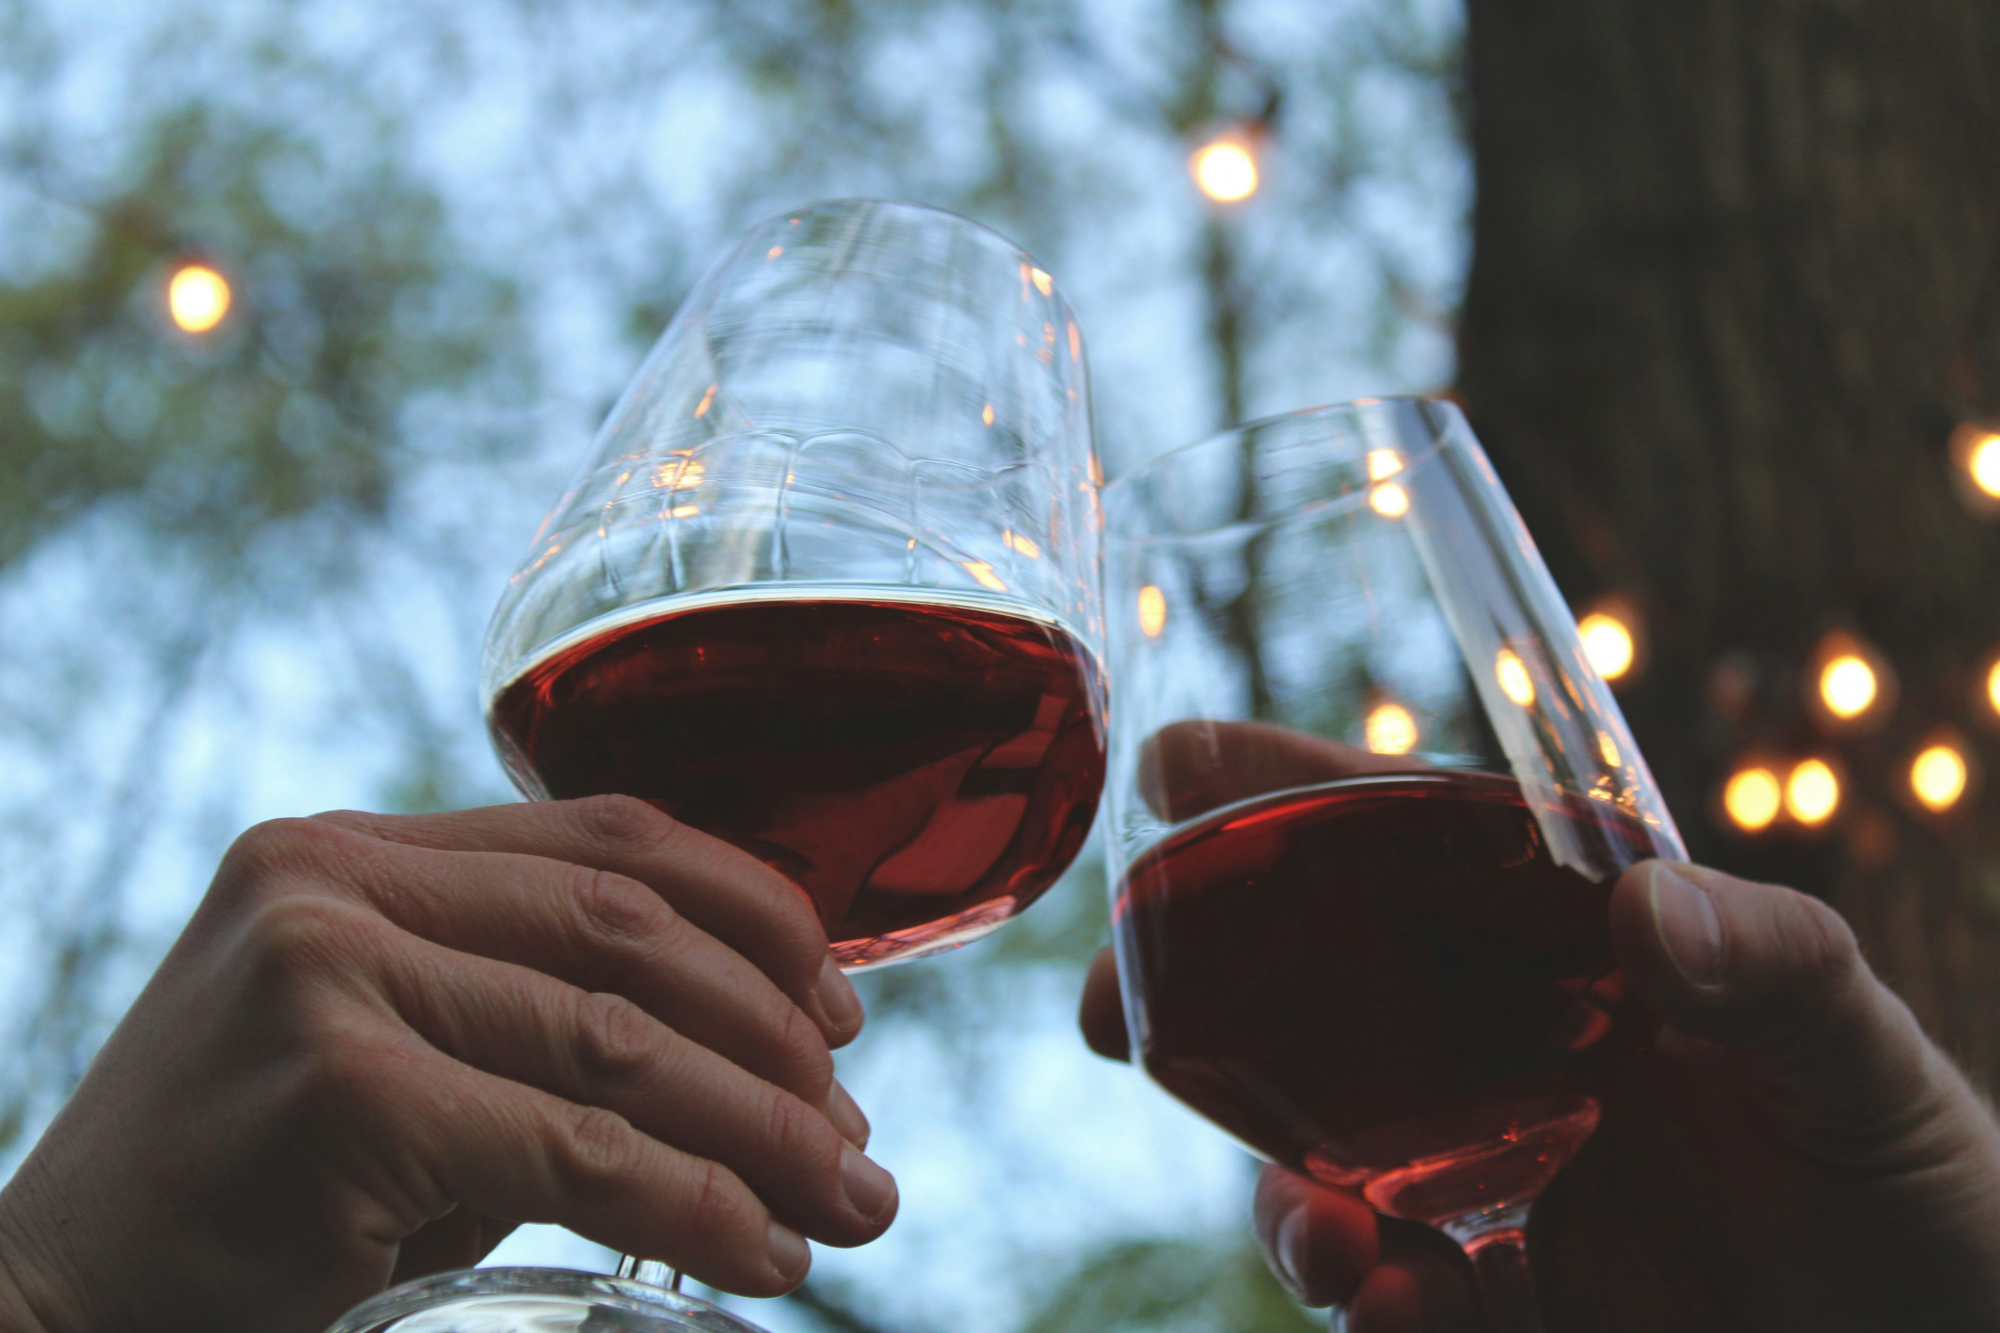 découvrez une sélection de vins rouges de qualité et trouvez le parfait accord pour accompagner vos repas avec notre collection de vin rouge.